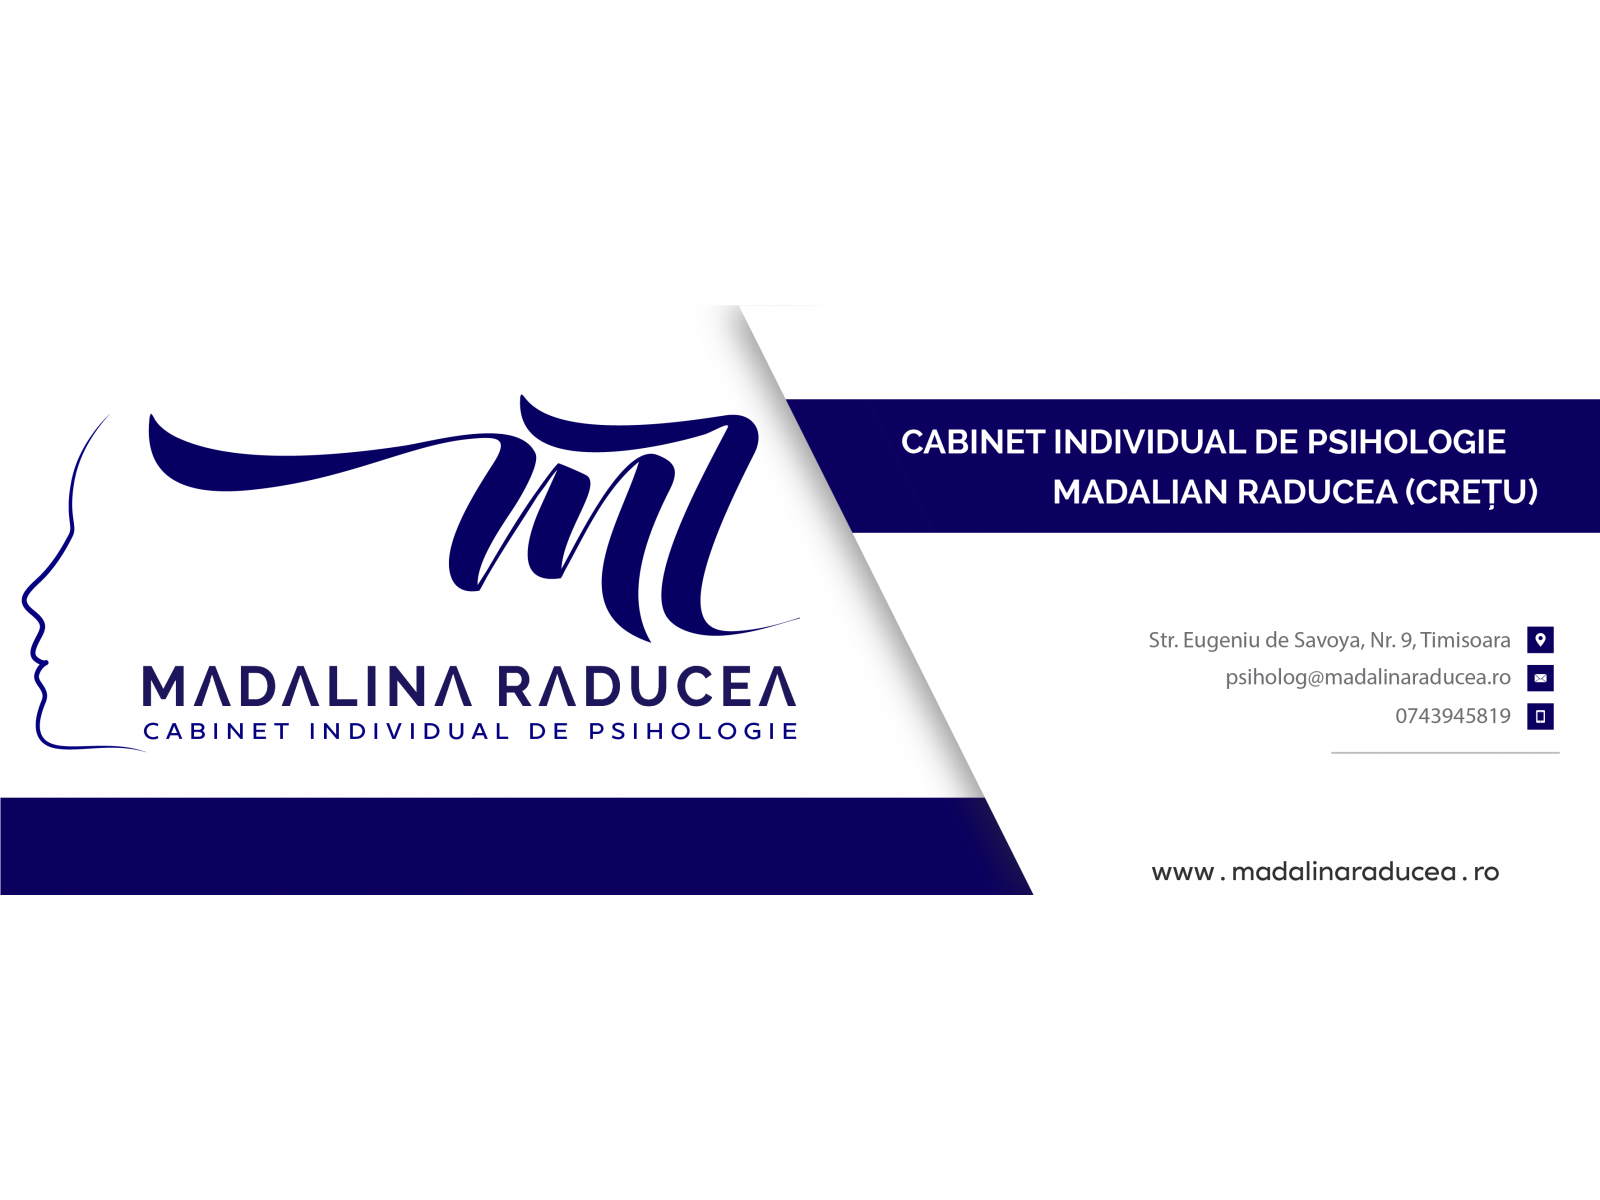 Cabinet Individual de Psihologie Mădălina Cretu Raducea - imagine_cover_facebook_copy.png